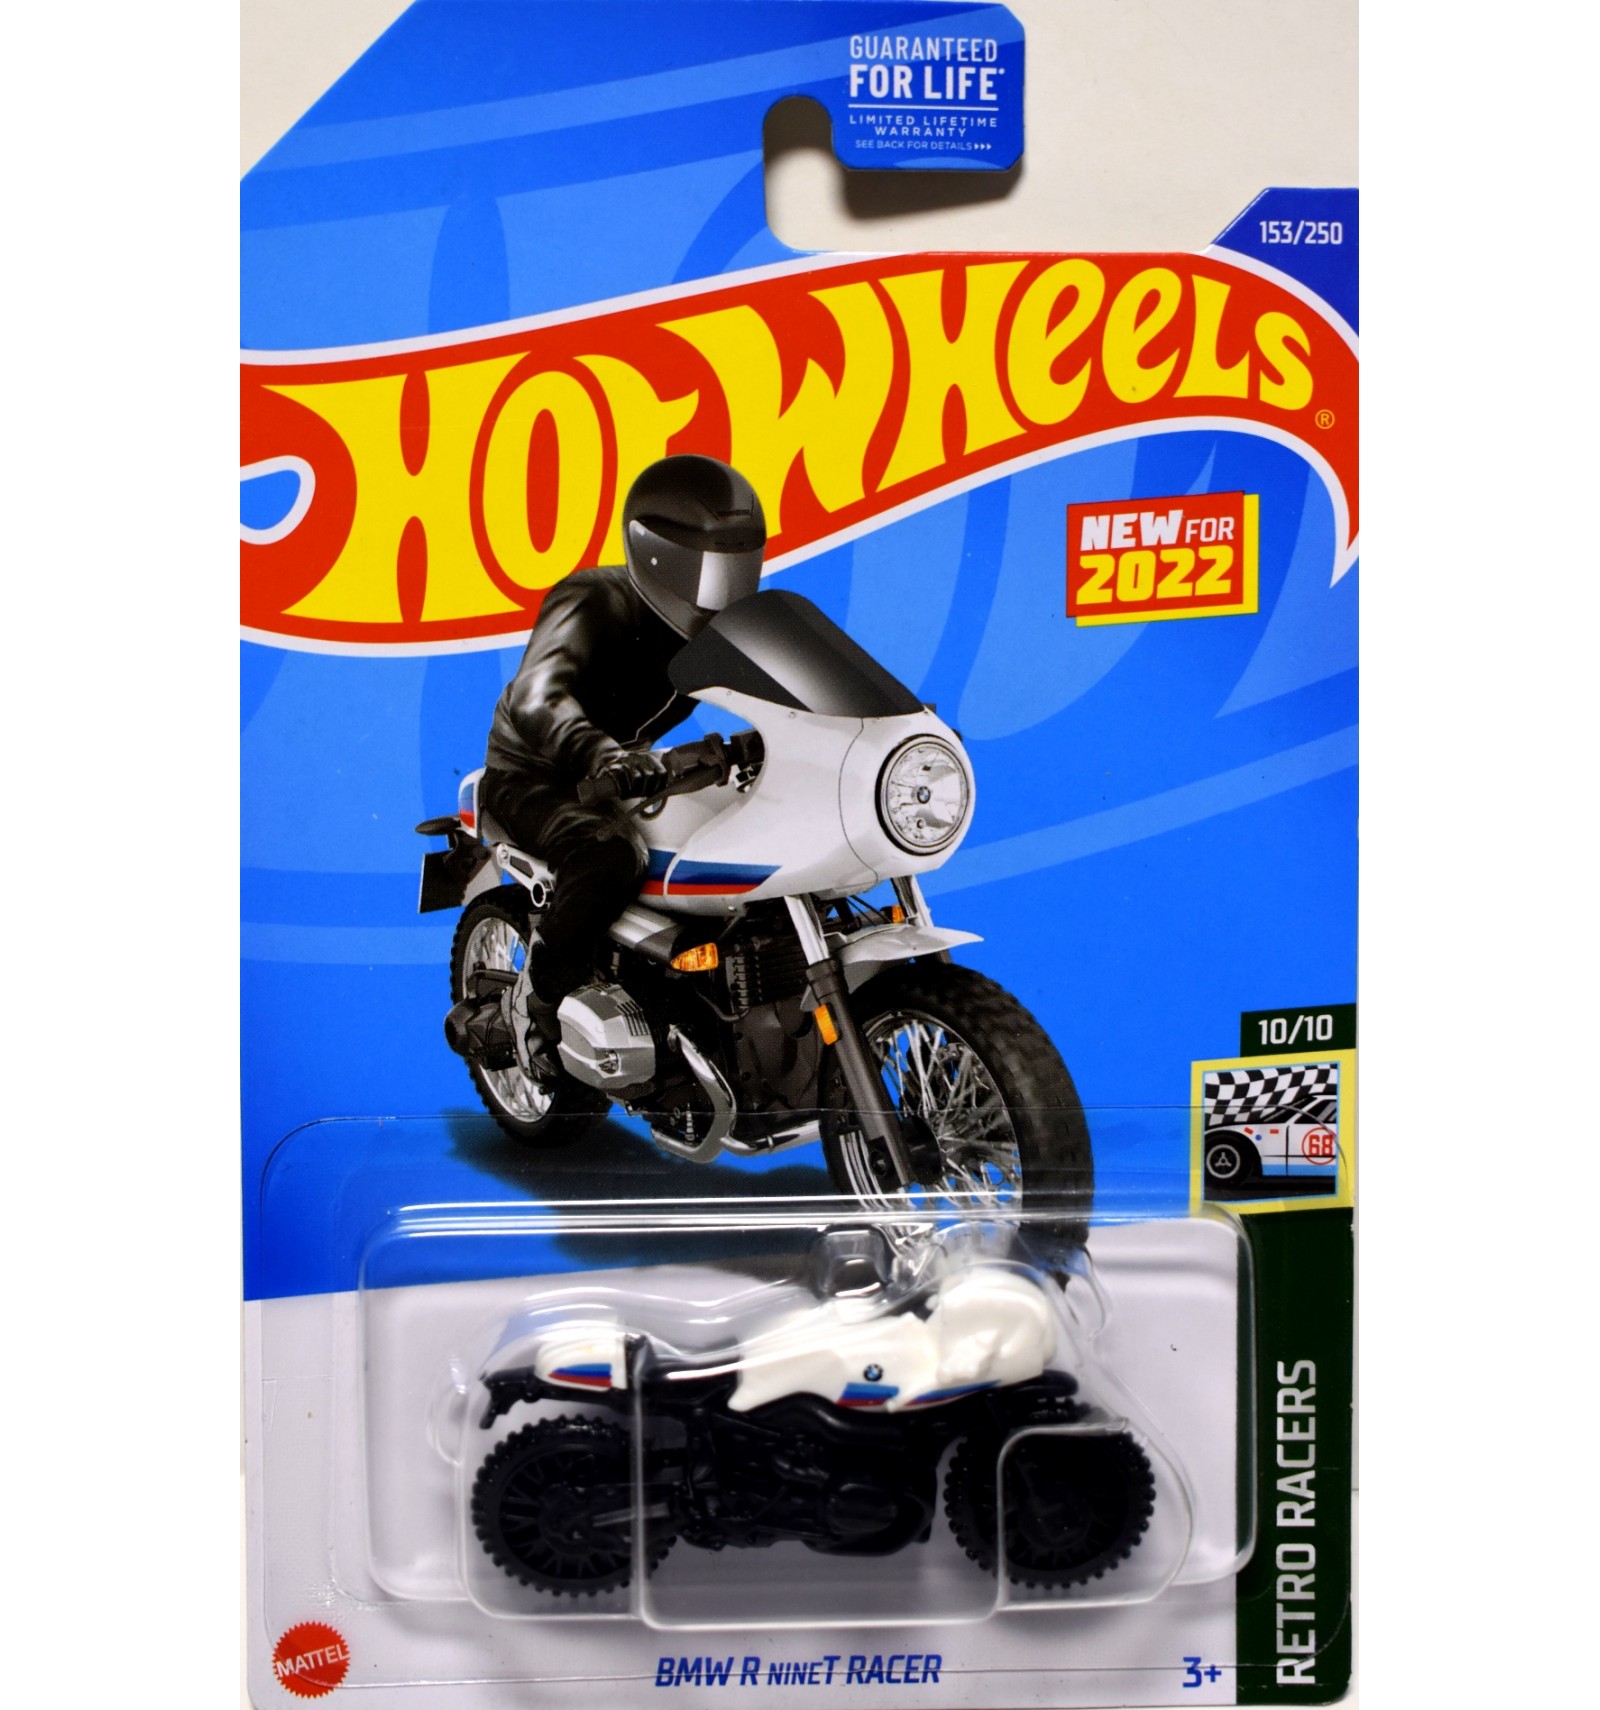 Hot Wheels - BMW R nineT Race Motorcycle (Black Wheels) - Global